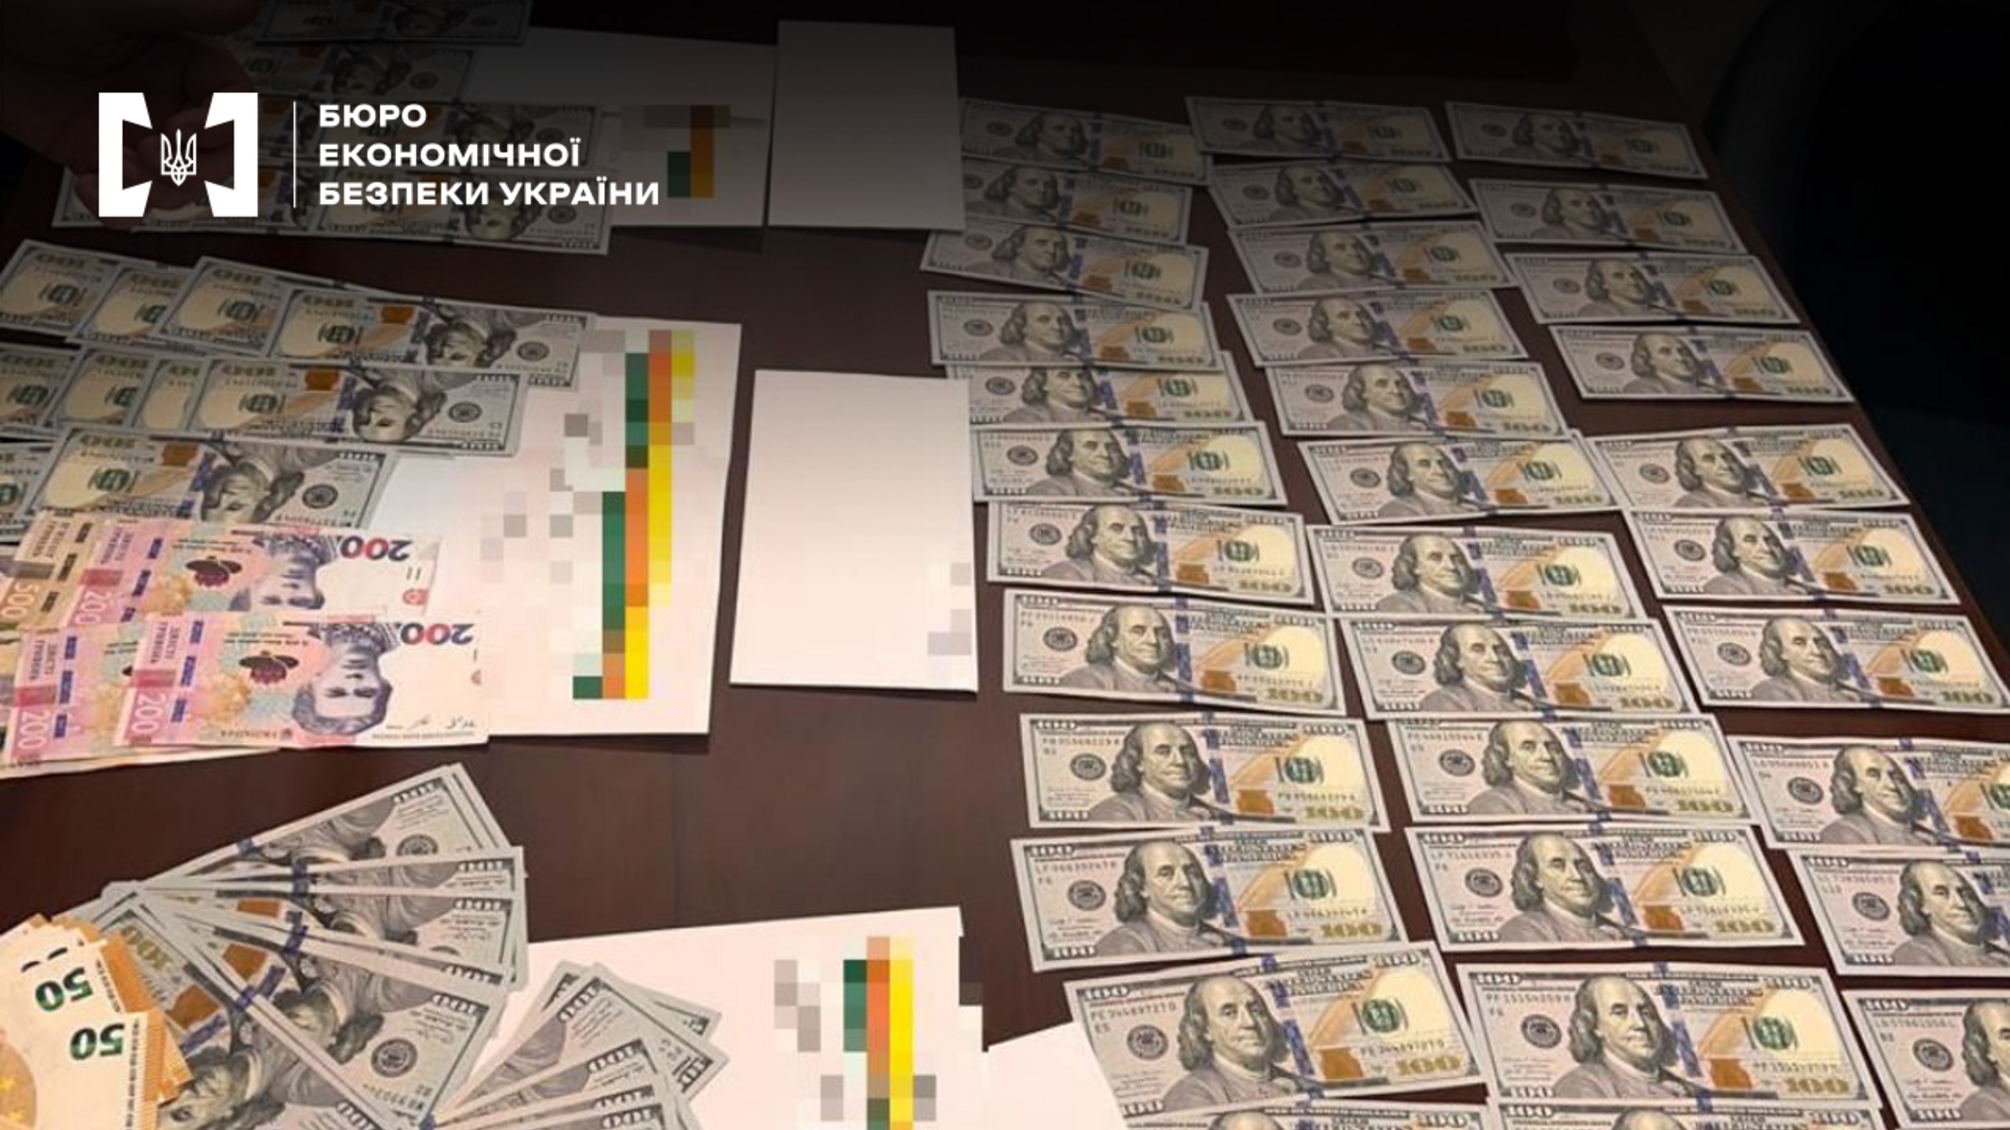 Бизнес 'под прикрытием': в Киеве ликвидированы нелегальное казино и мошеннический колл-центр